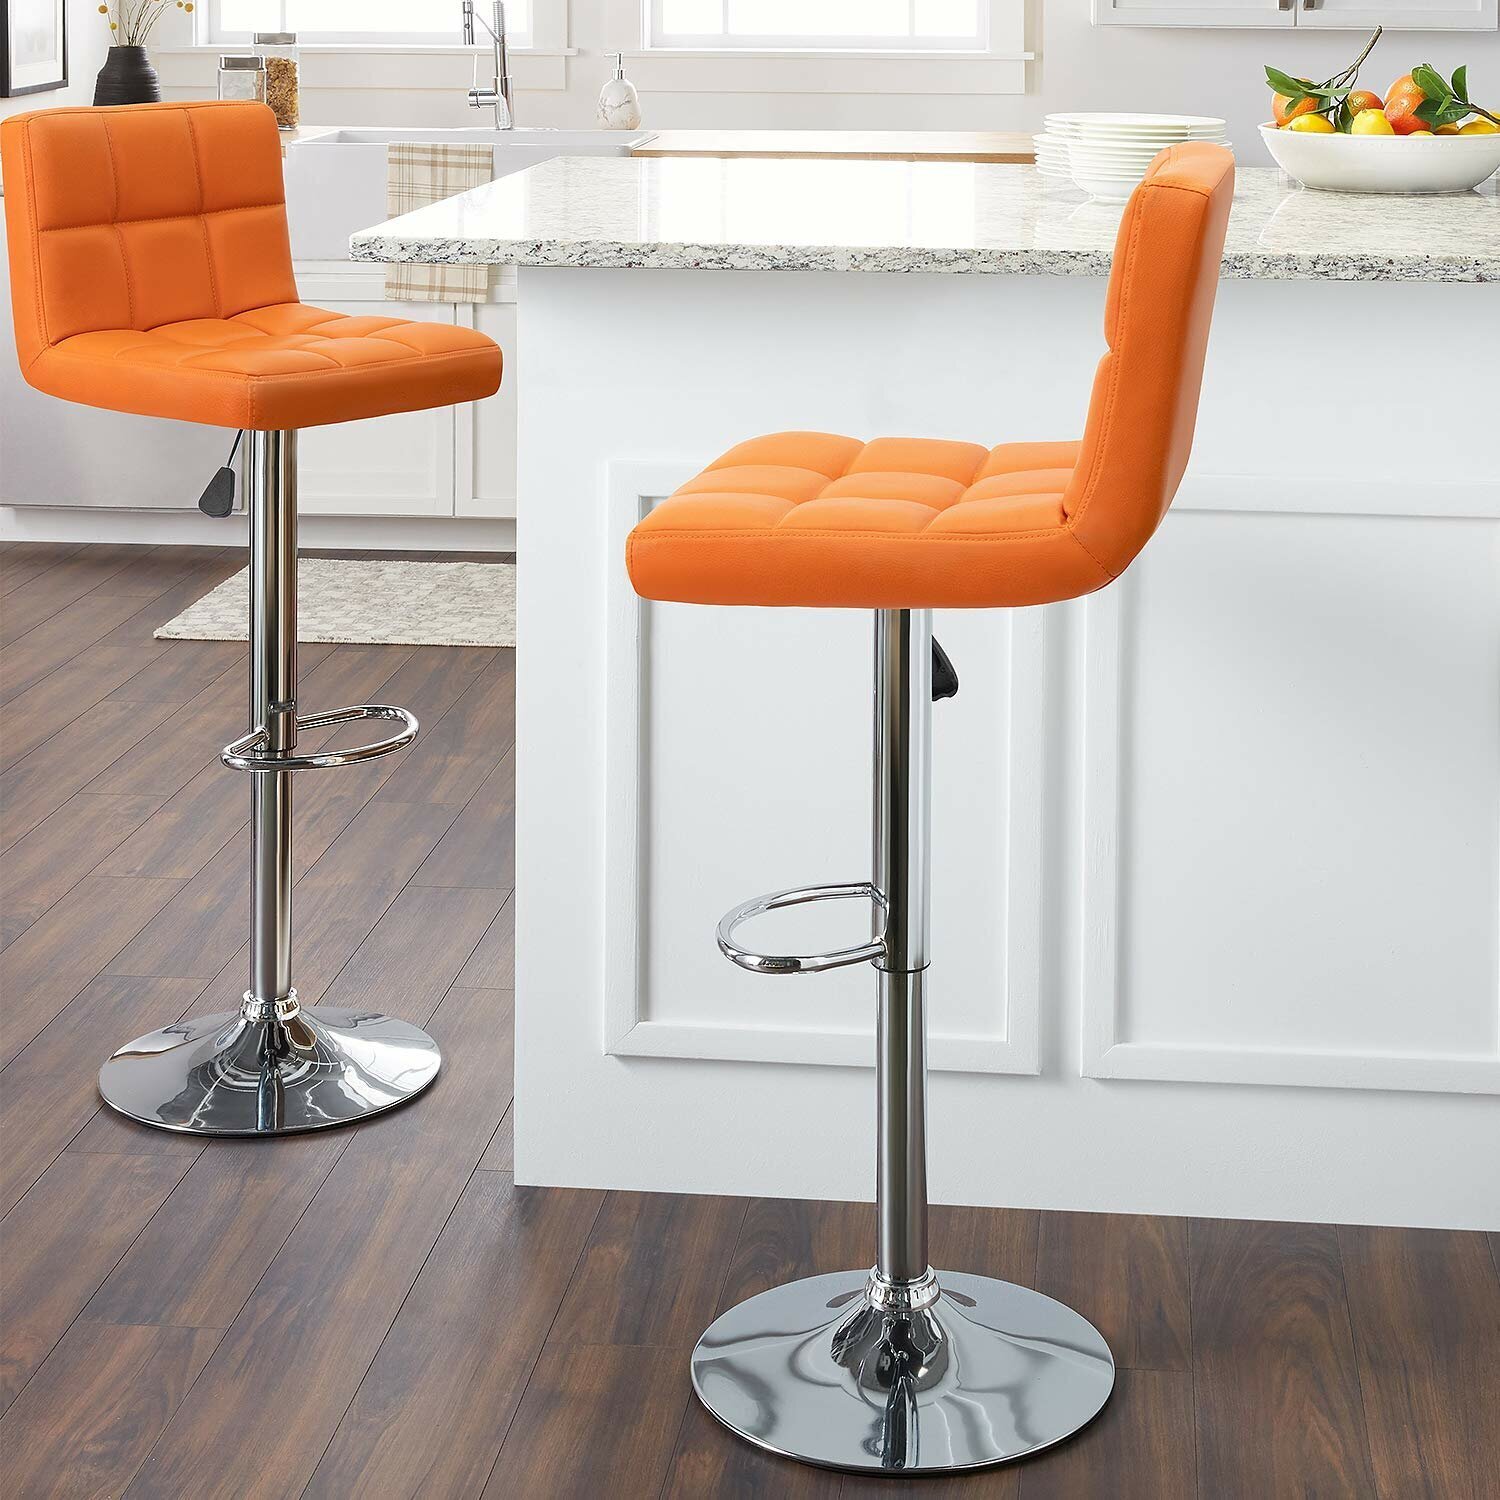 Swivel orange kitchen bar stools